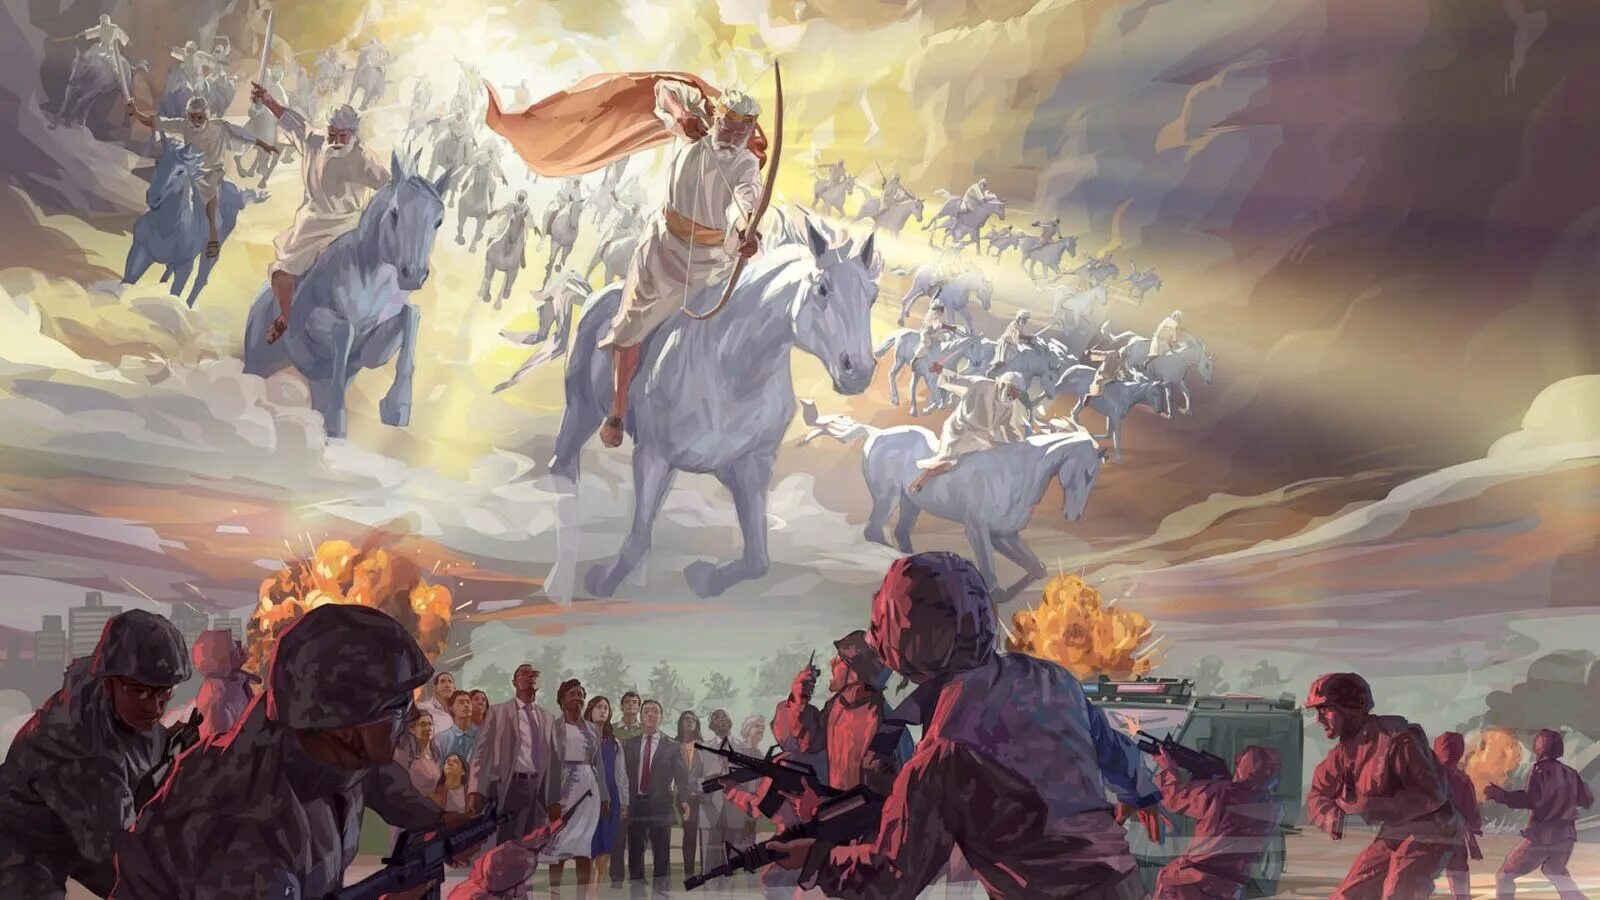 Господь разрушить. Армагеддон последняя битва. Второе пришествие Иисуса Христа на коне. Армагеддон и второе пришествие Иисуса Христа. Иисус Христос и воинство.